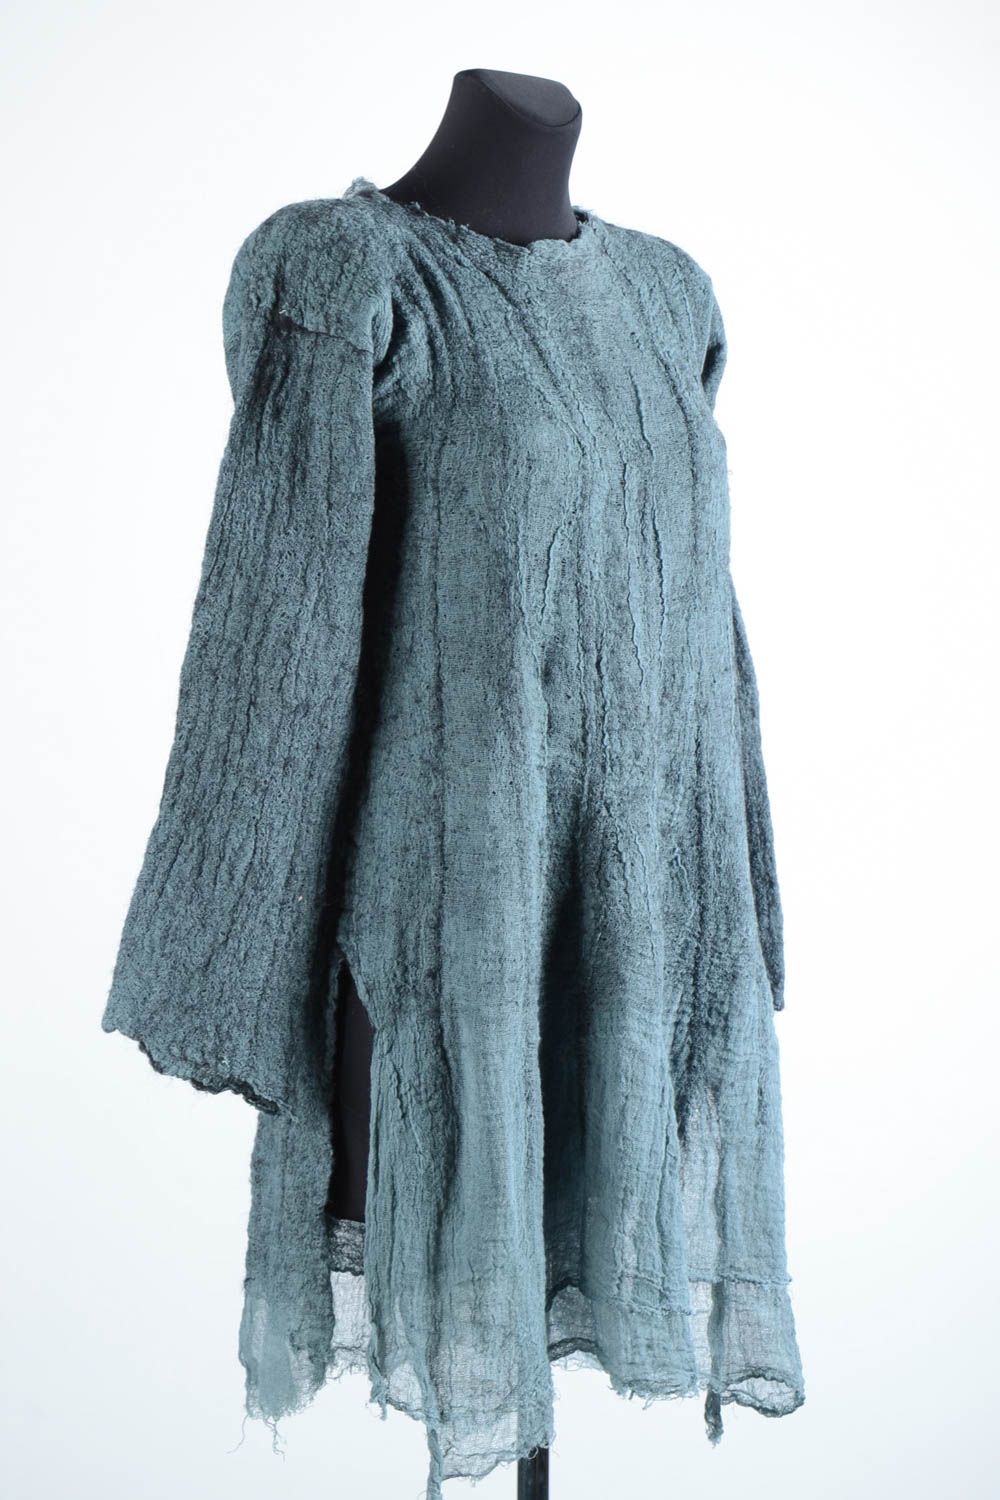 Robe femme fait main Robe laine gris bleu feutrage Vêtement femme de mode photo 3